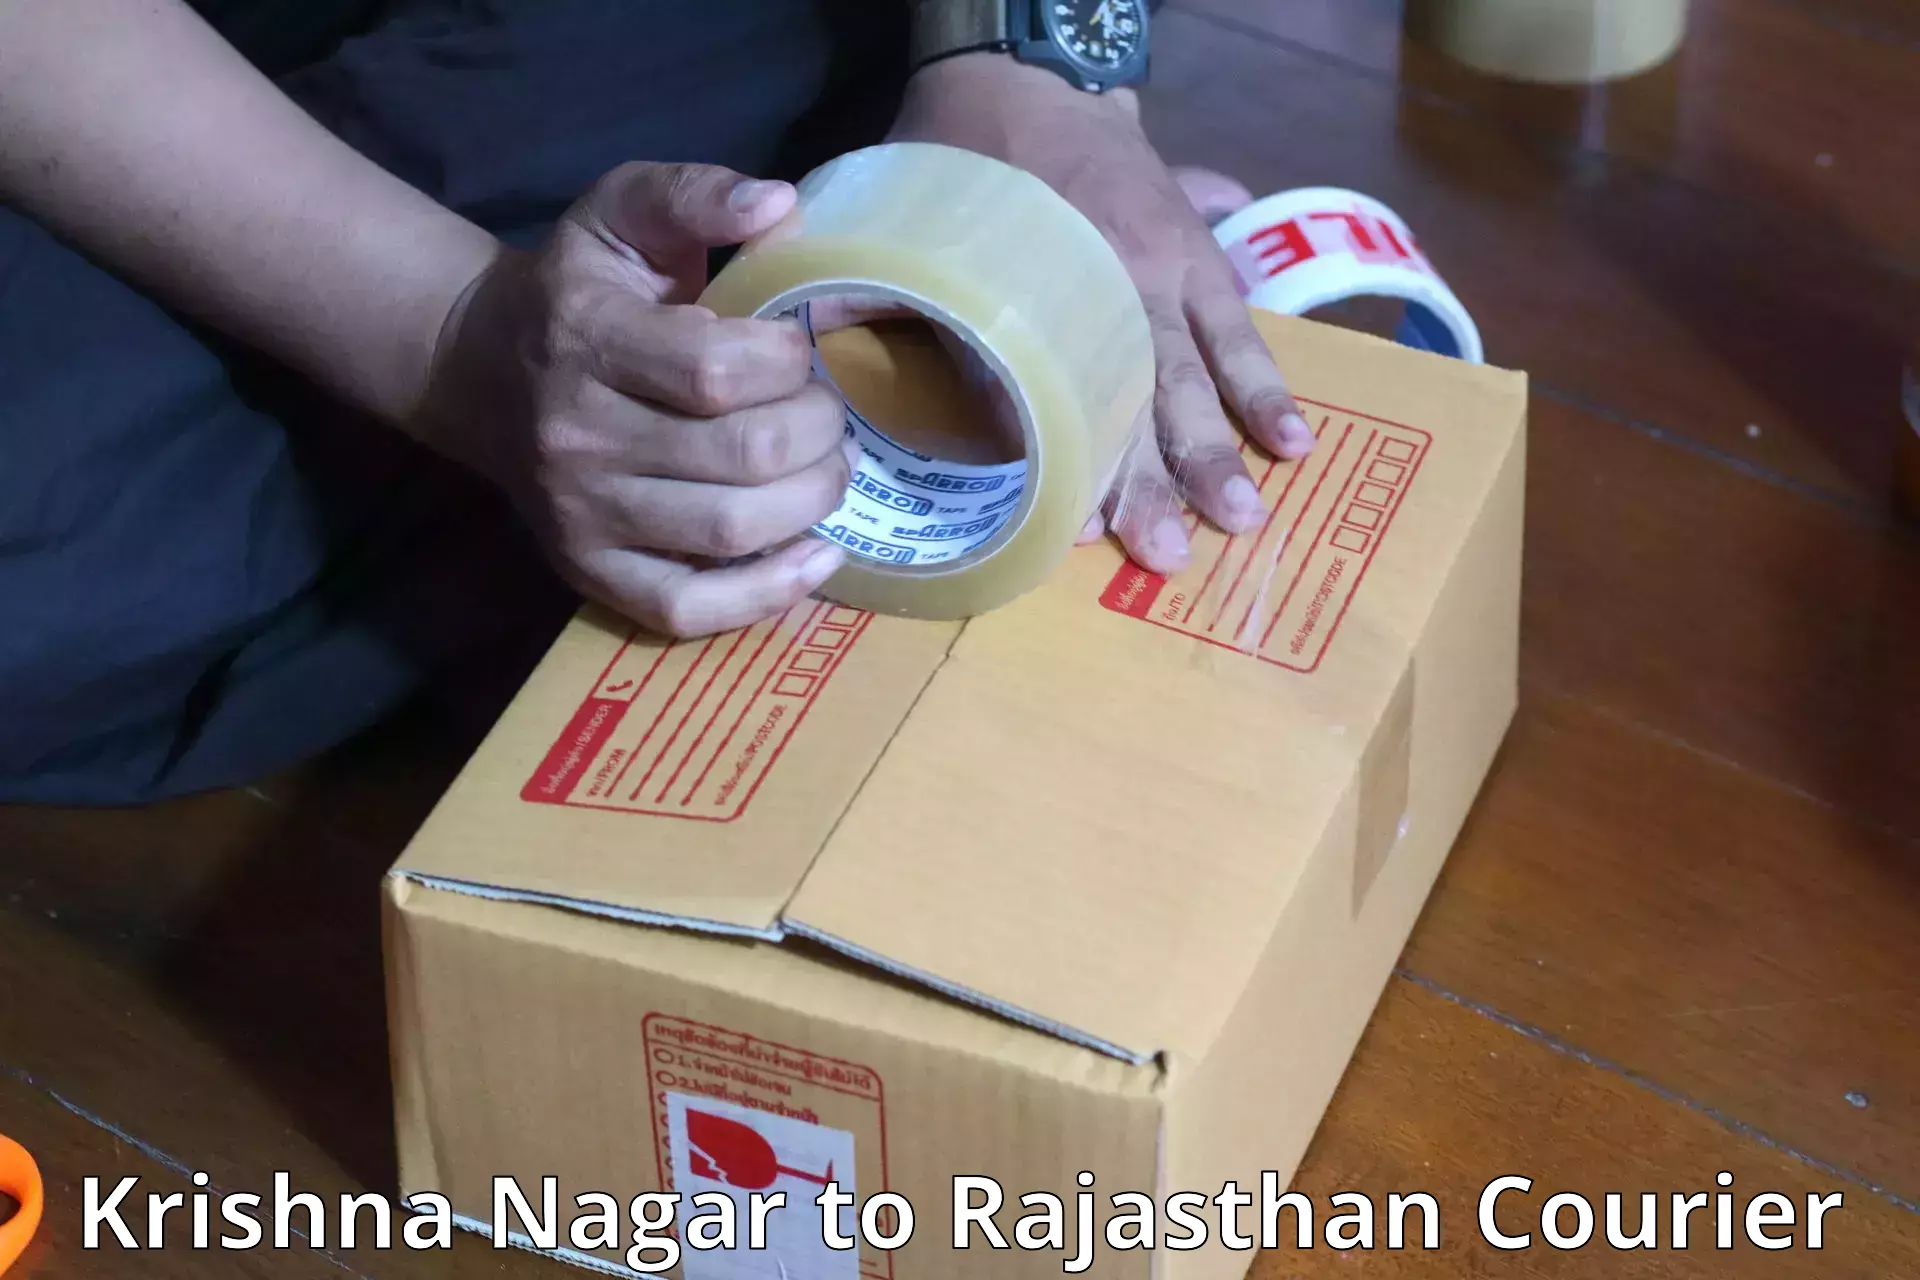 Baggage shipping schedule Krishna Nagar to Rajasthan